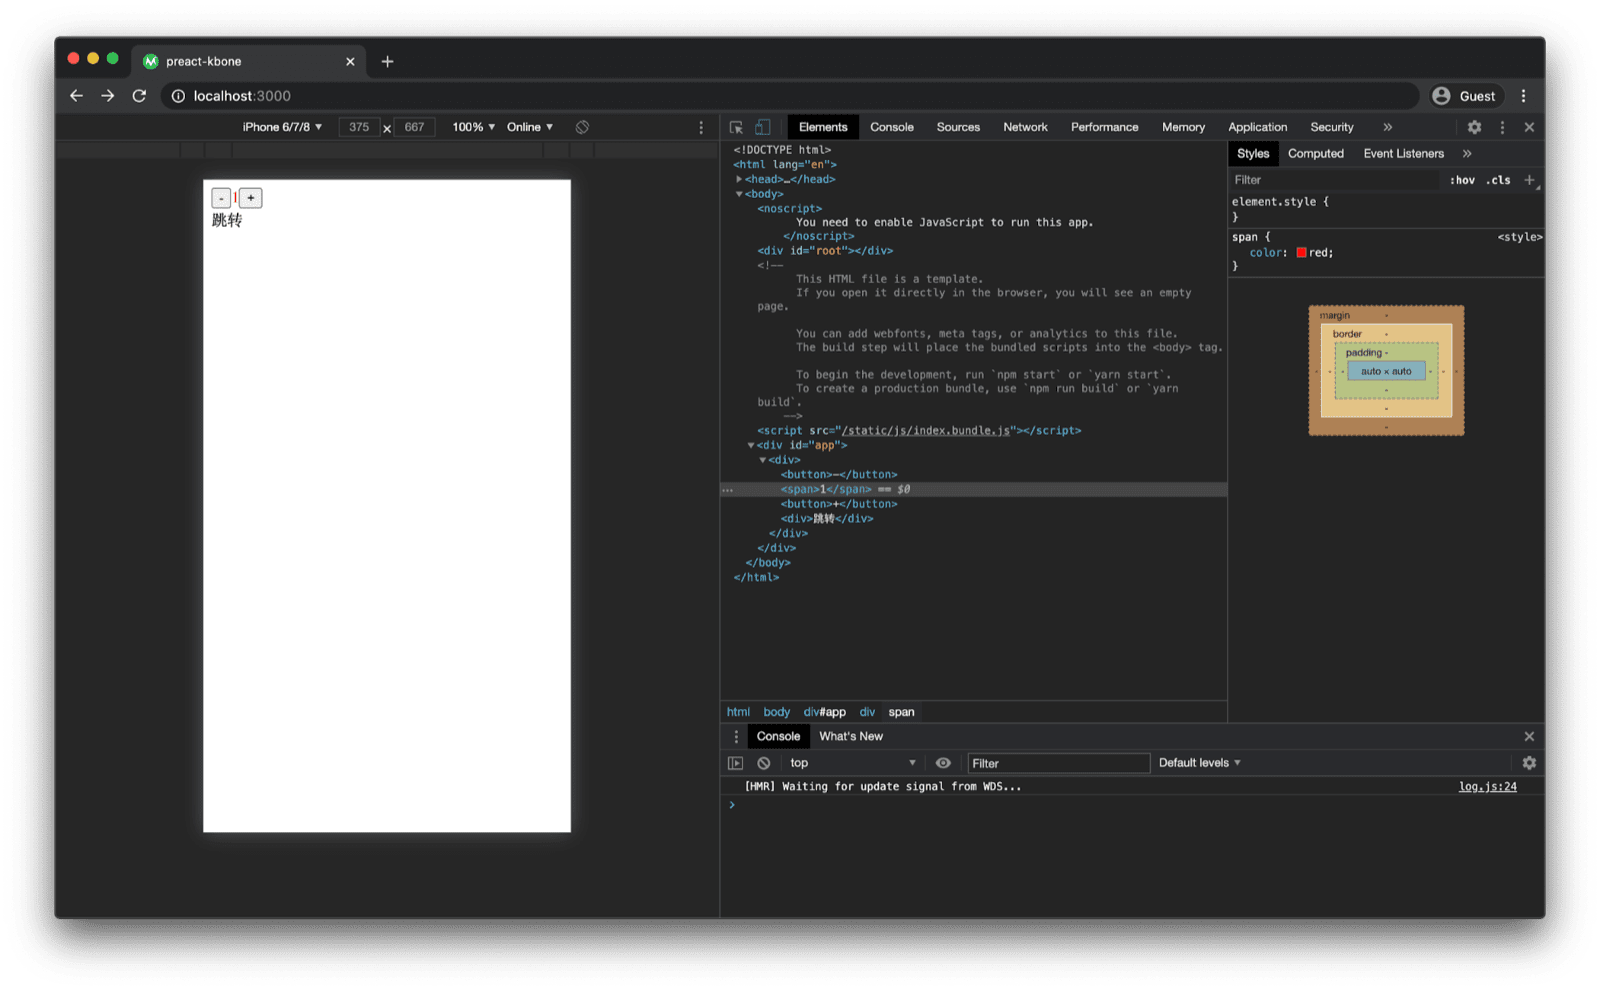 웹브라우저에서 열린 Preact kbone 템플릿 데모 앱 DOM 구조를 검사하면 Preact 구성요소 코드를 기반으로 예상되는 마크업이 표시됩니다.